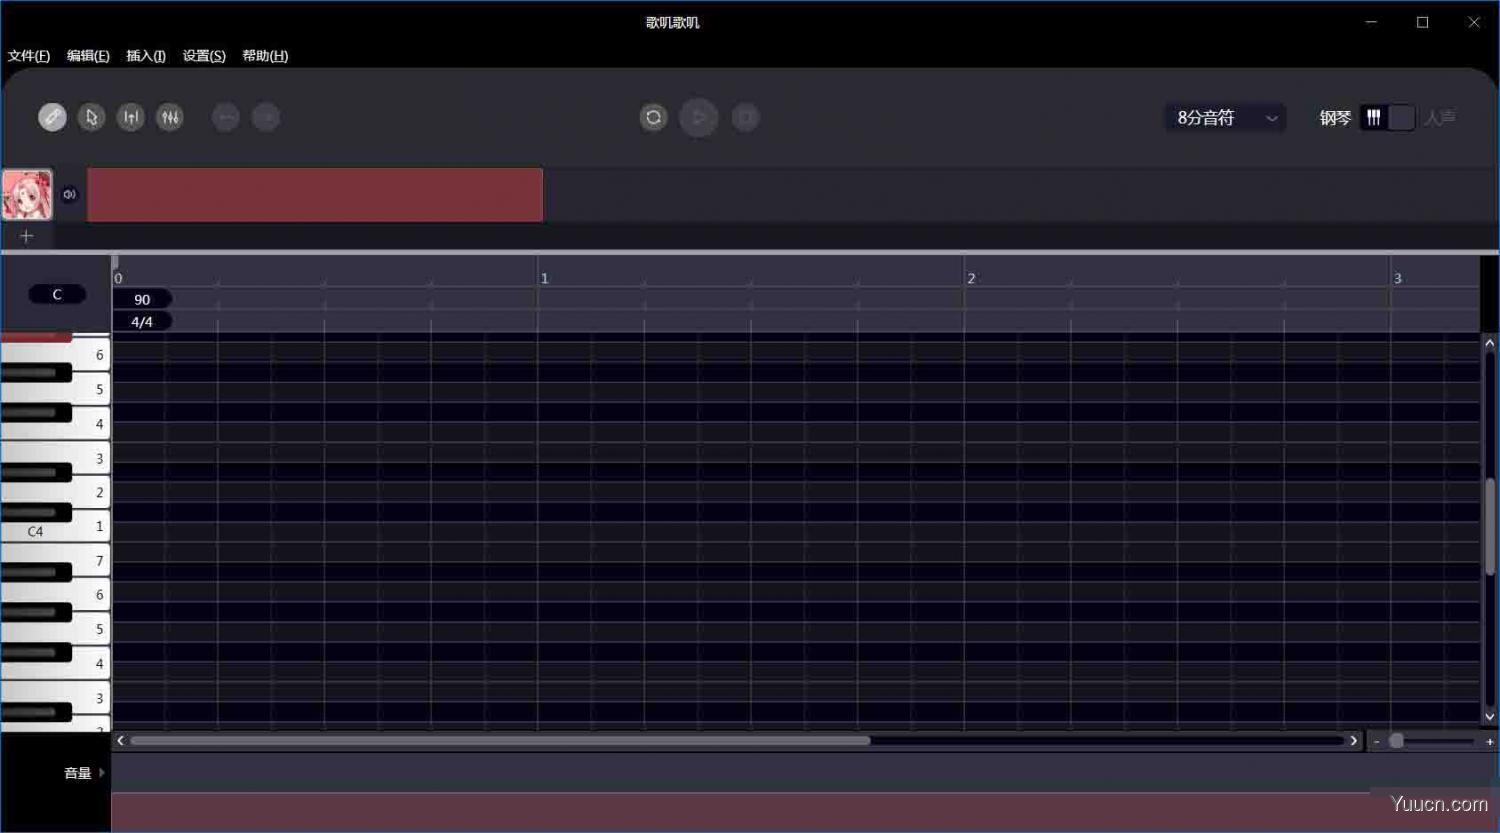 歌叽歌叽(虚拟歌手歌曲创作软件) v1.0.0 免费安装版